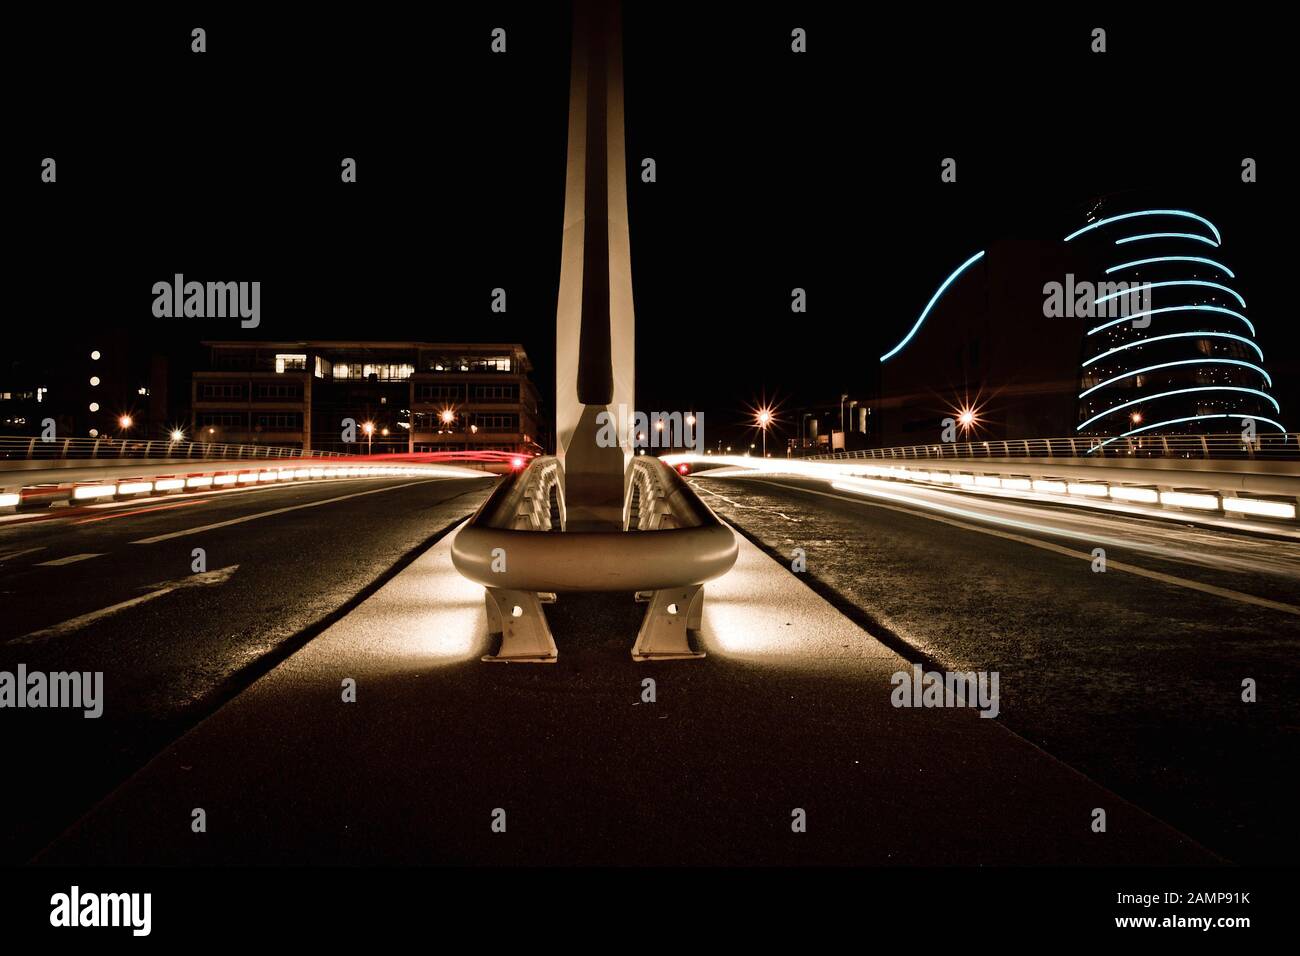 Langsame Exposition Night Shot der Samuel Beckett Brücke in Dublin, Irland. Convention Center können im Hintergrund gesehen werden. Stockfoto